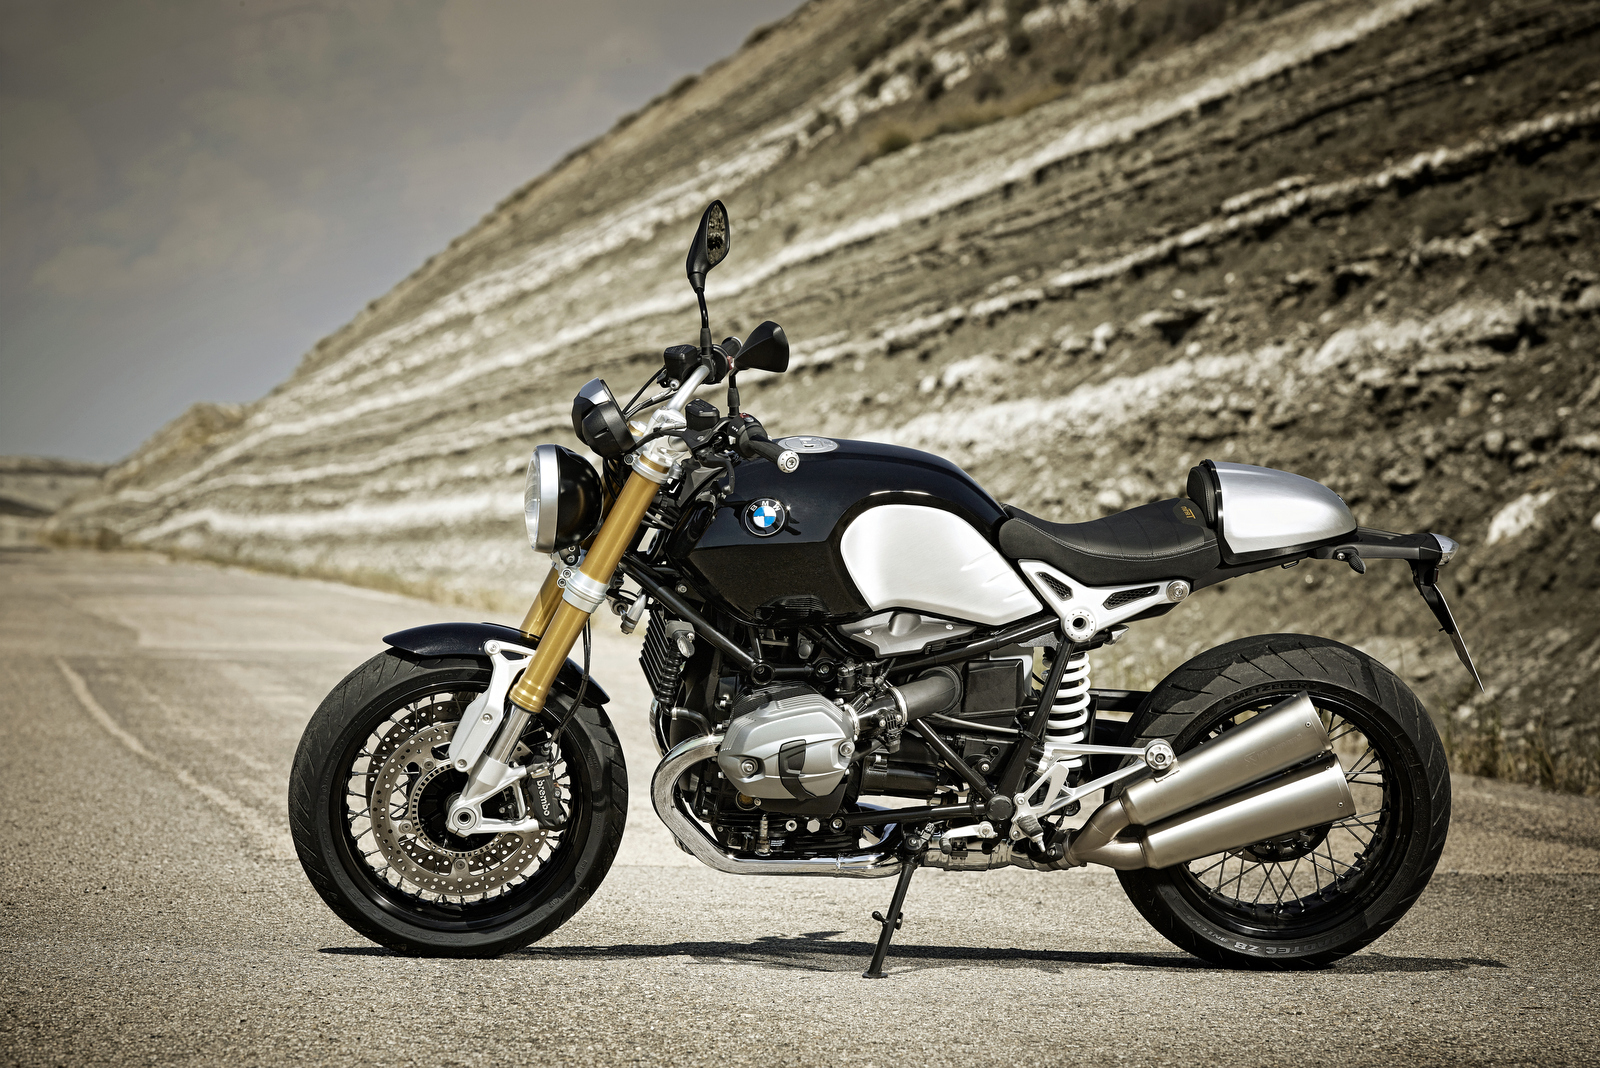 BMW RnineT – אופנוע פיוטי